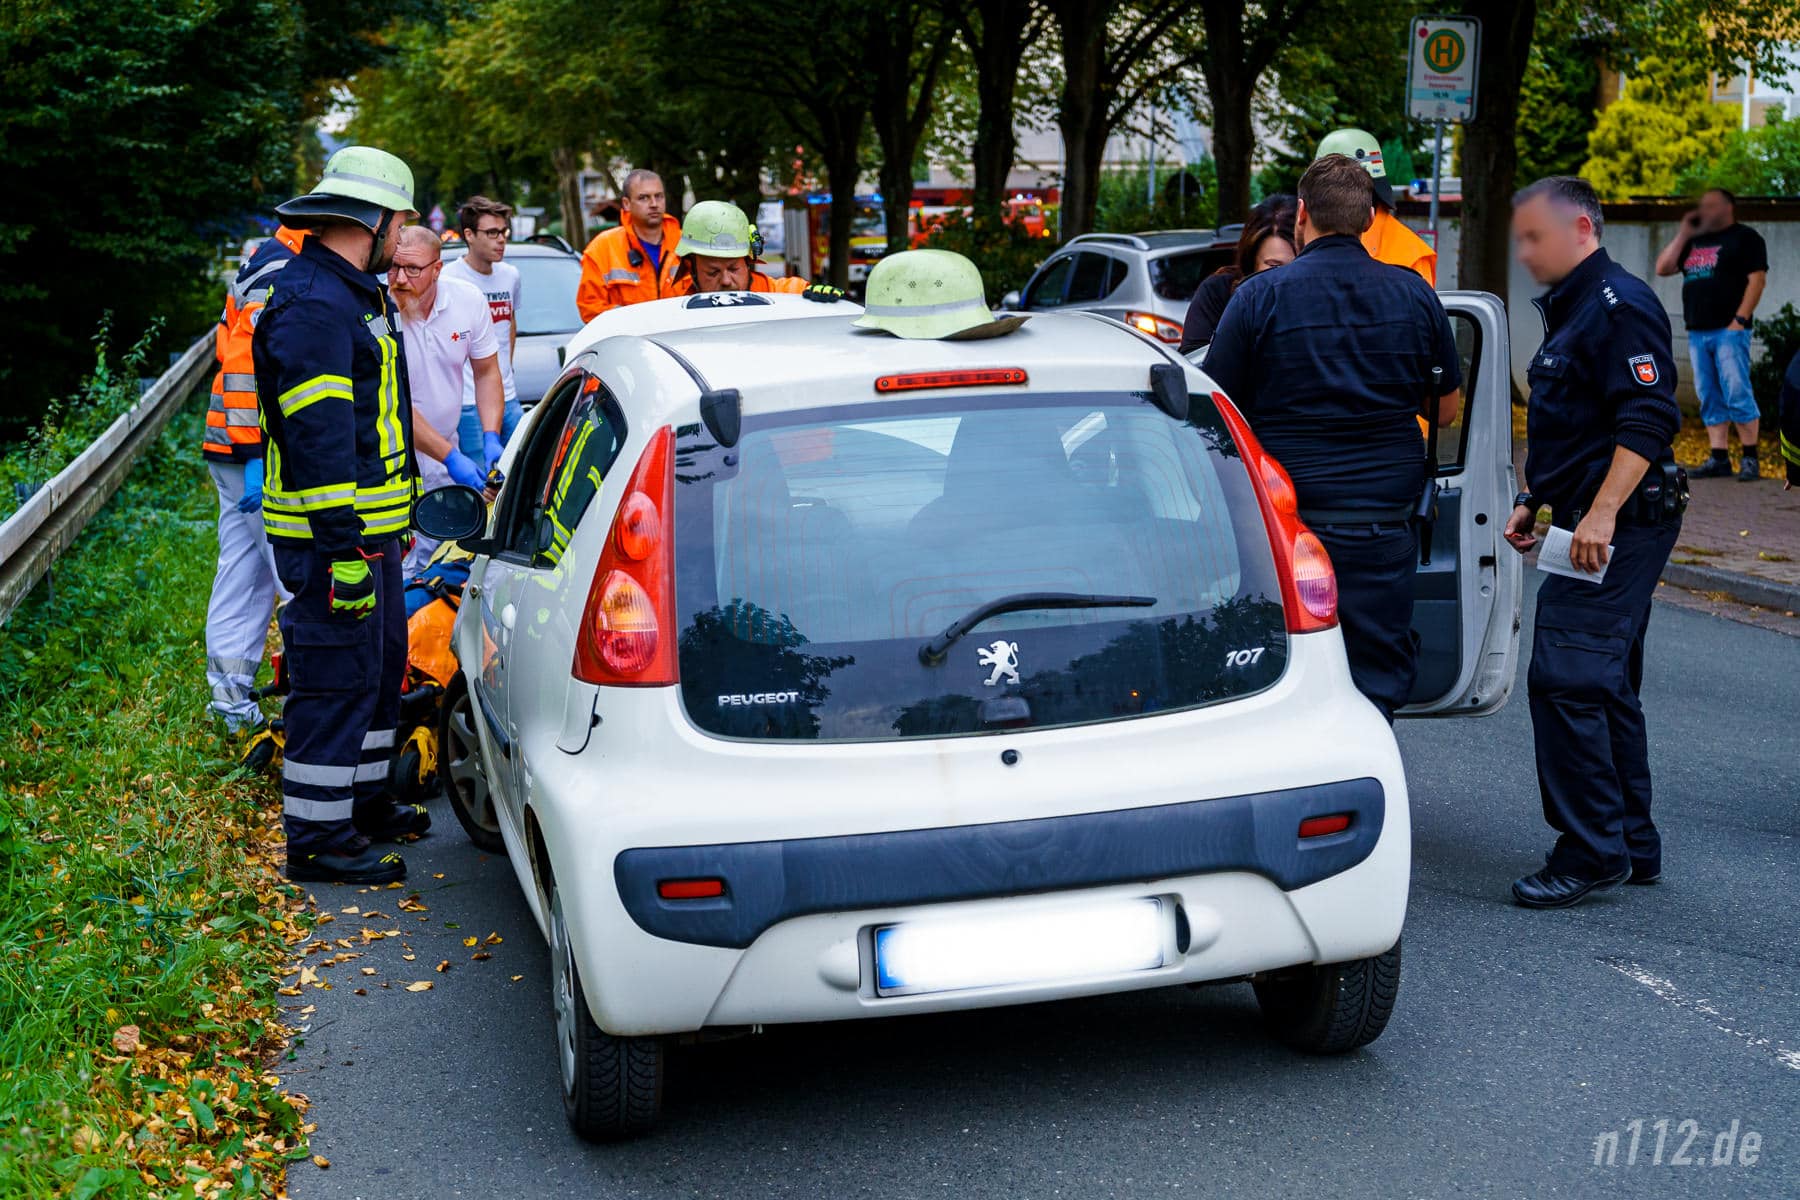 Helfer von Feuerwehr und Rettungsdienst versorgen die Verursacherin (Foto: n112.de/Stefan Hillen)